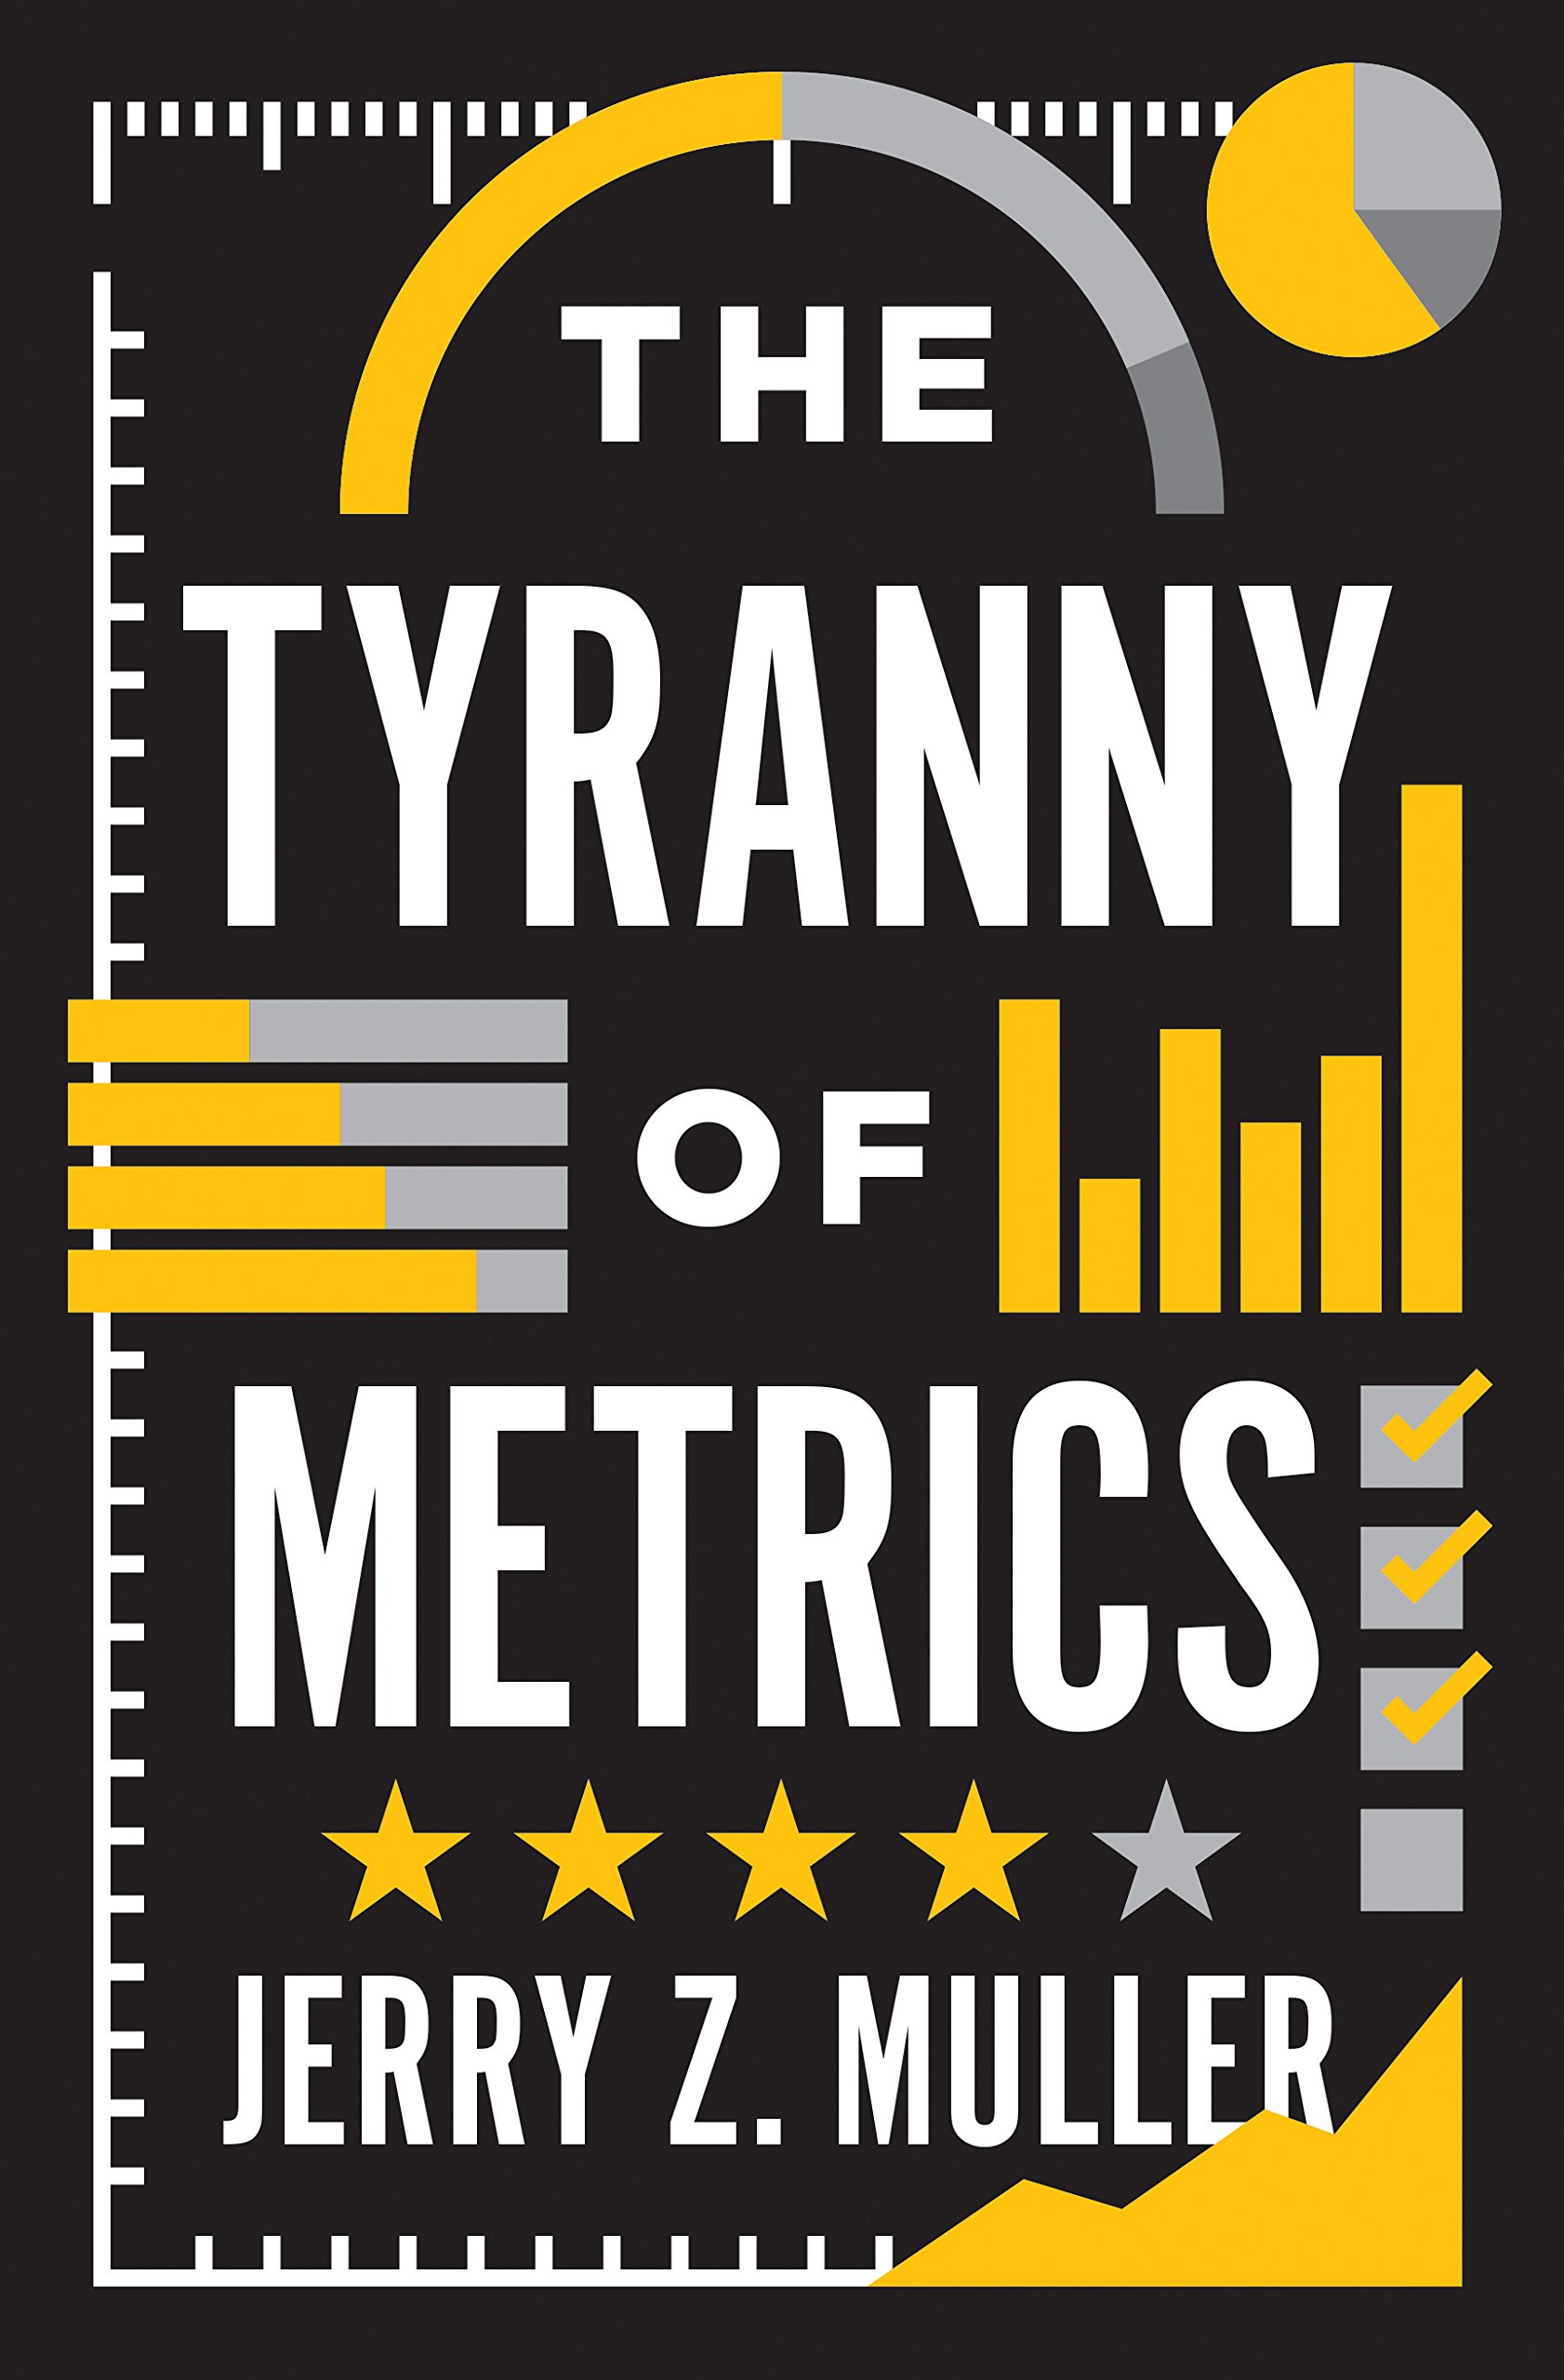 Jerry Z. Muller: The Tyranny of Metrics (2018, Princeton University Press)